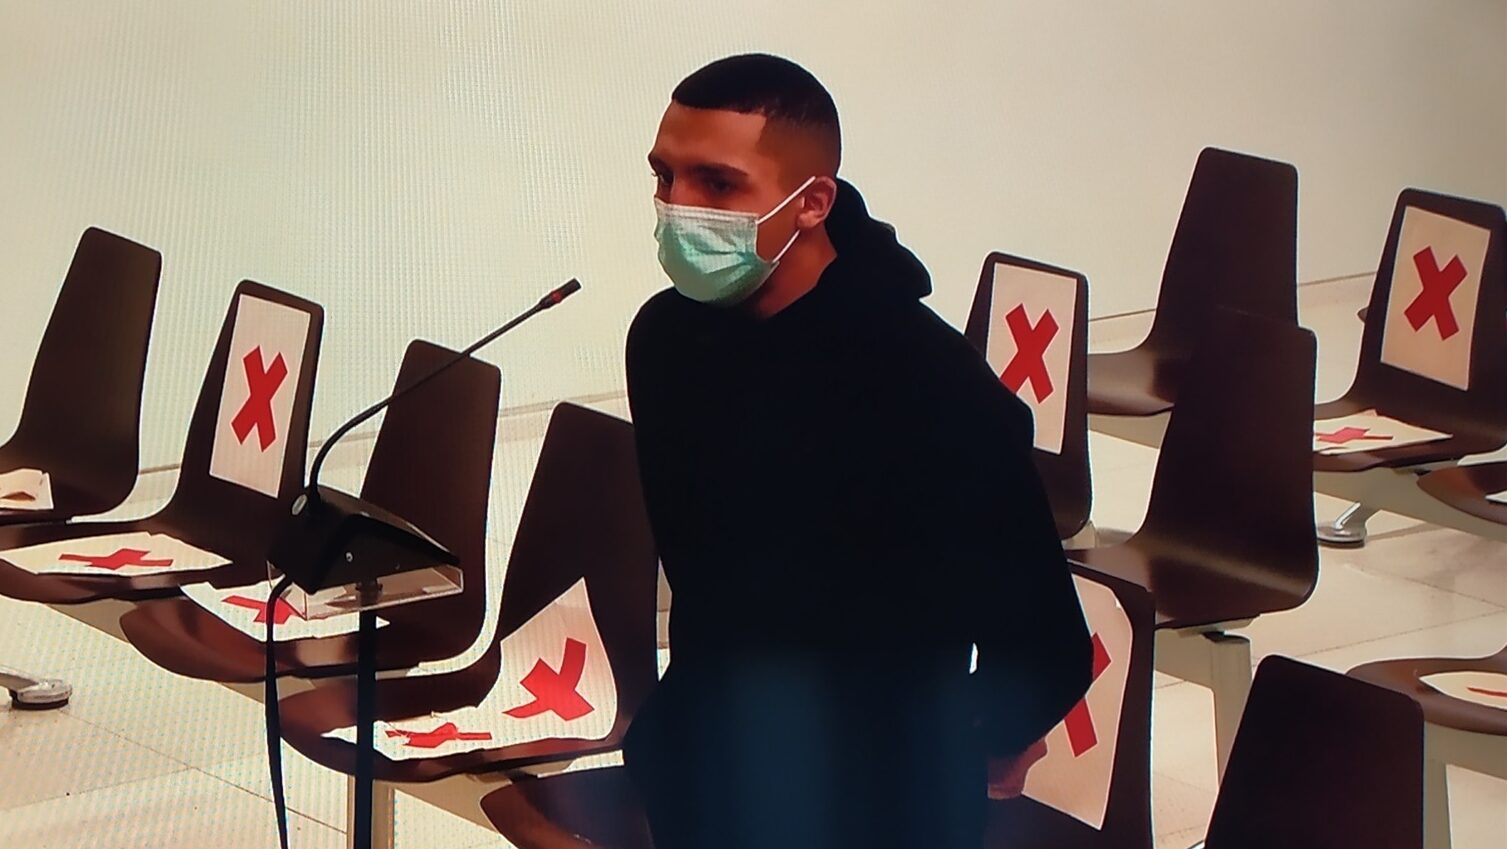 El rapero Morad declara en el juicio por presunto intento de robo y amenazas, en Barcelona el 9 de febrero de 2022.